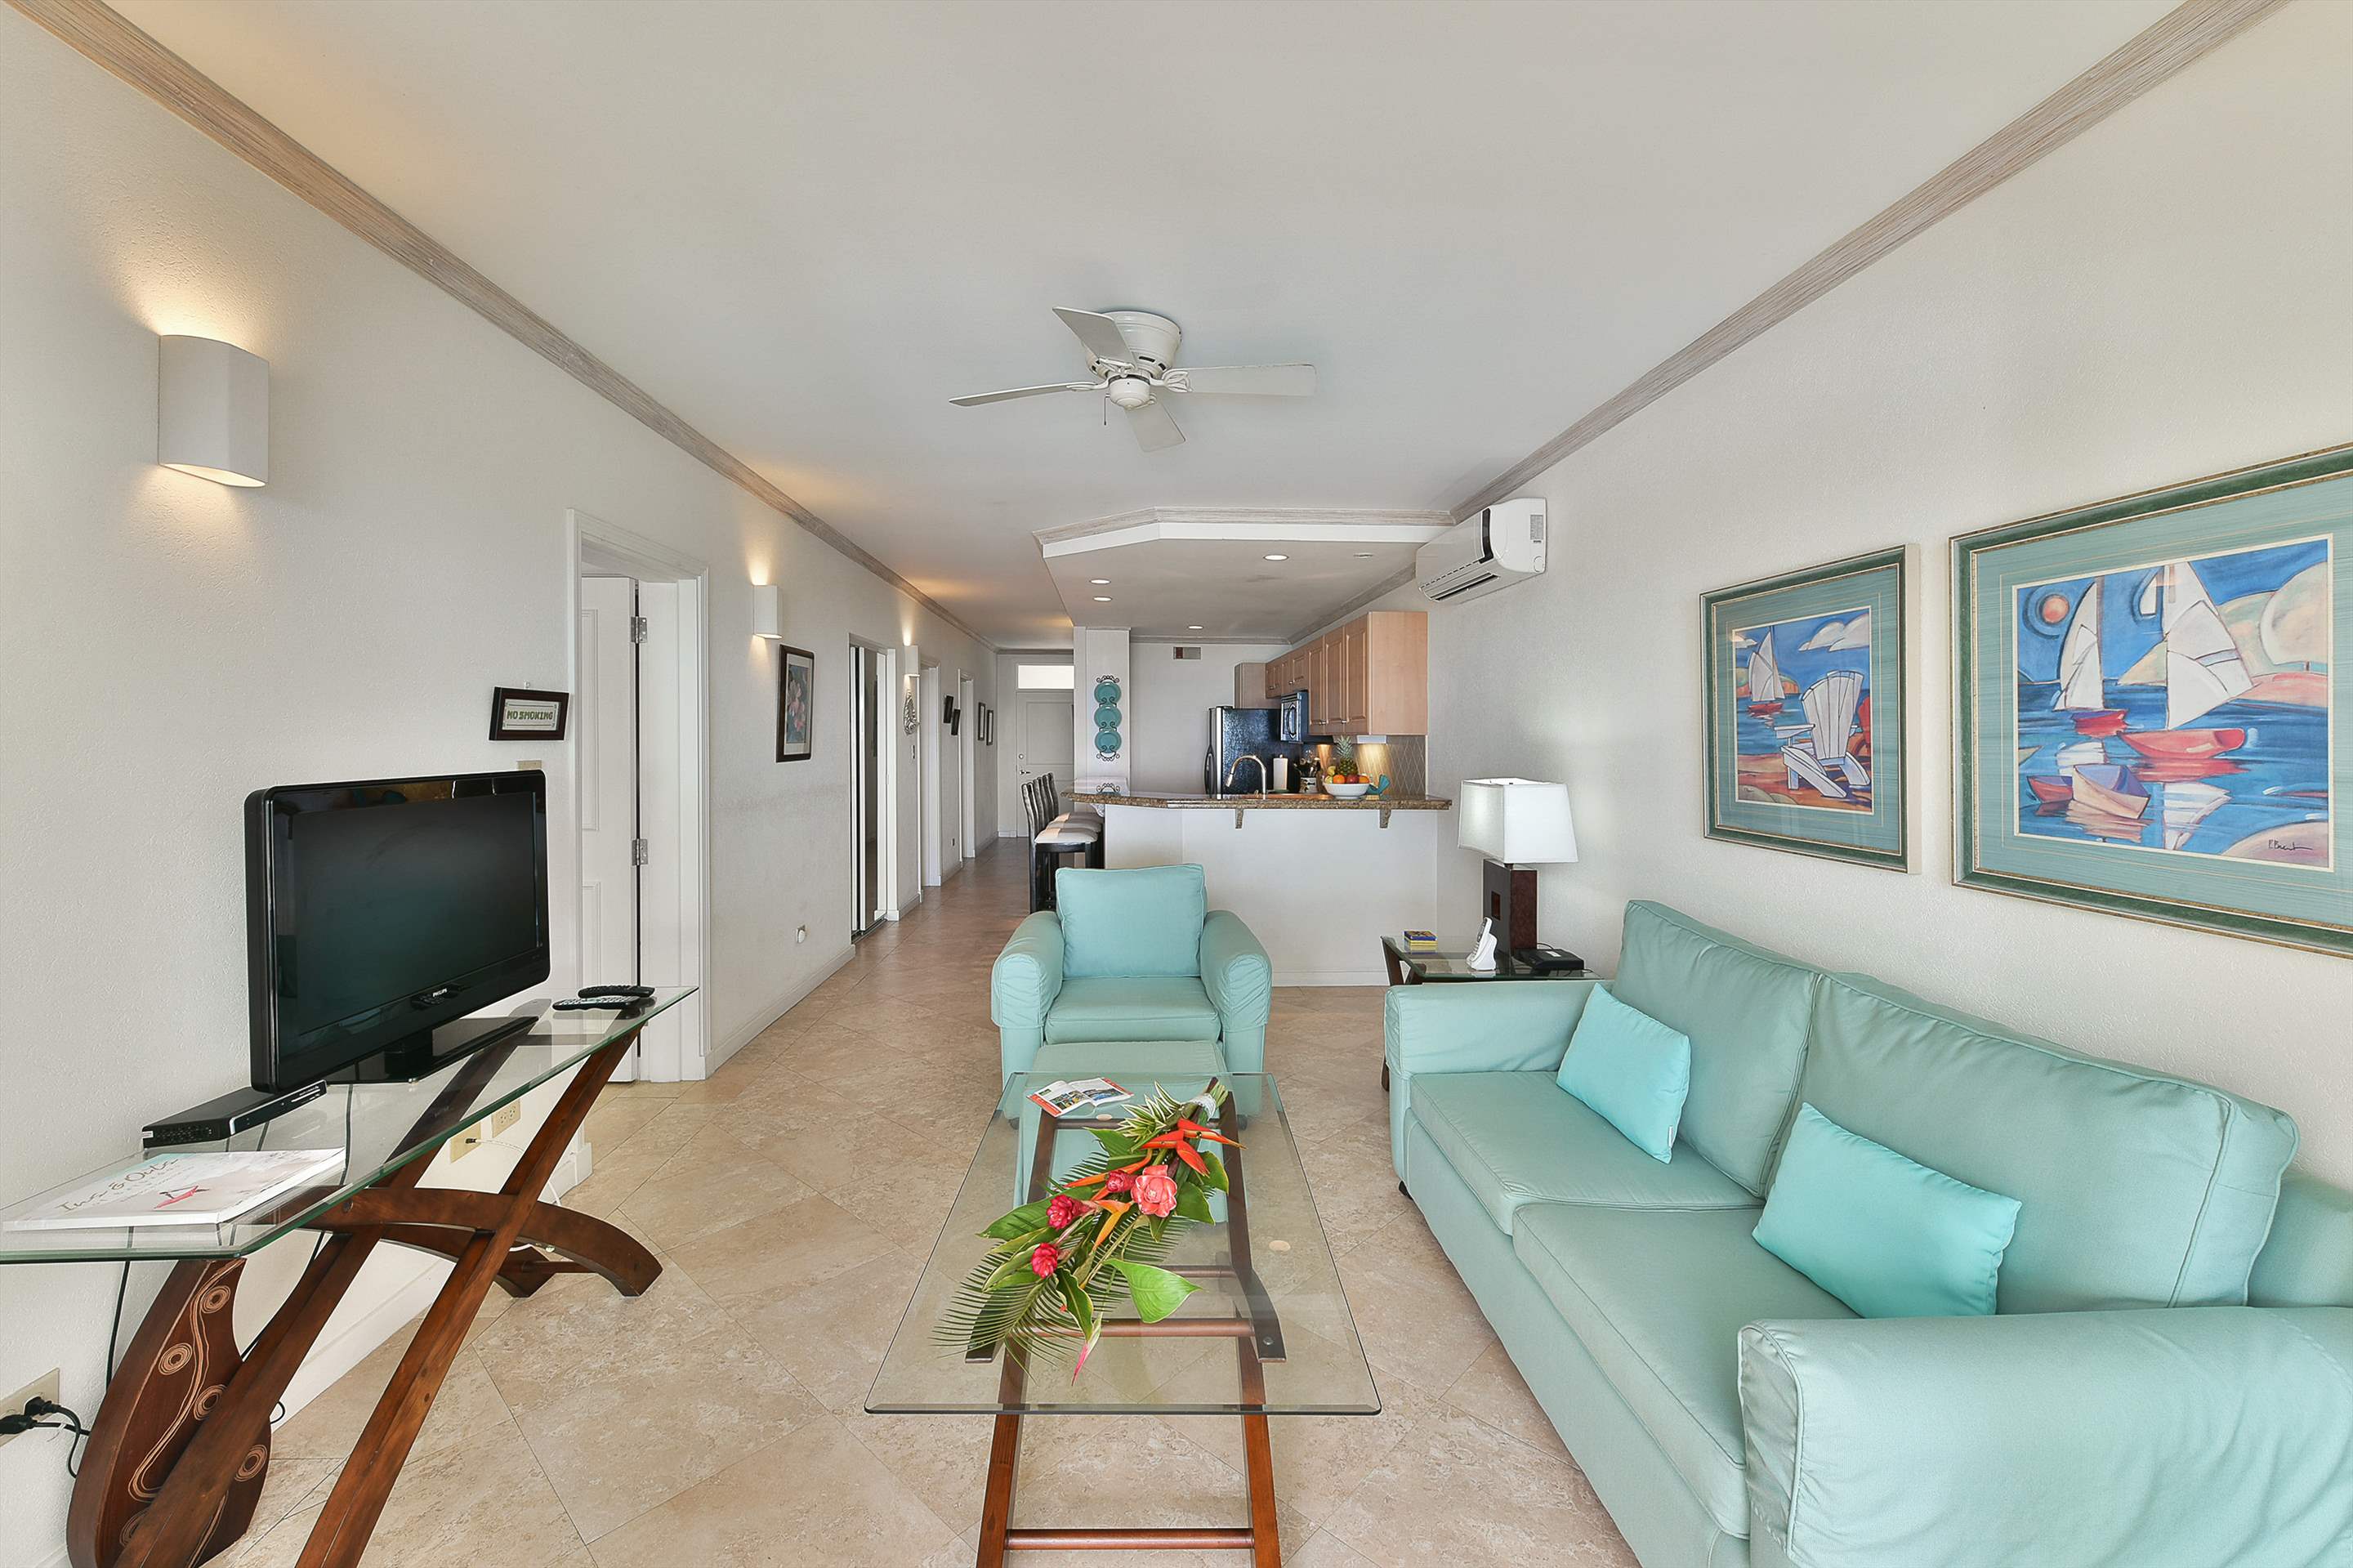 Maxwell Beach Villas 101, 2 bedroom, 2 bedroom apartment in St. Lawrence Gap & South Coast, Barbados Photo #5